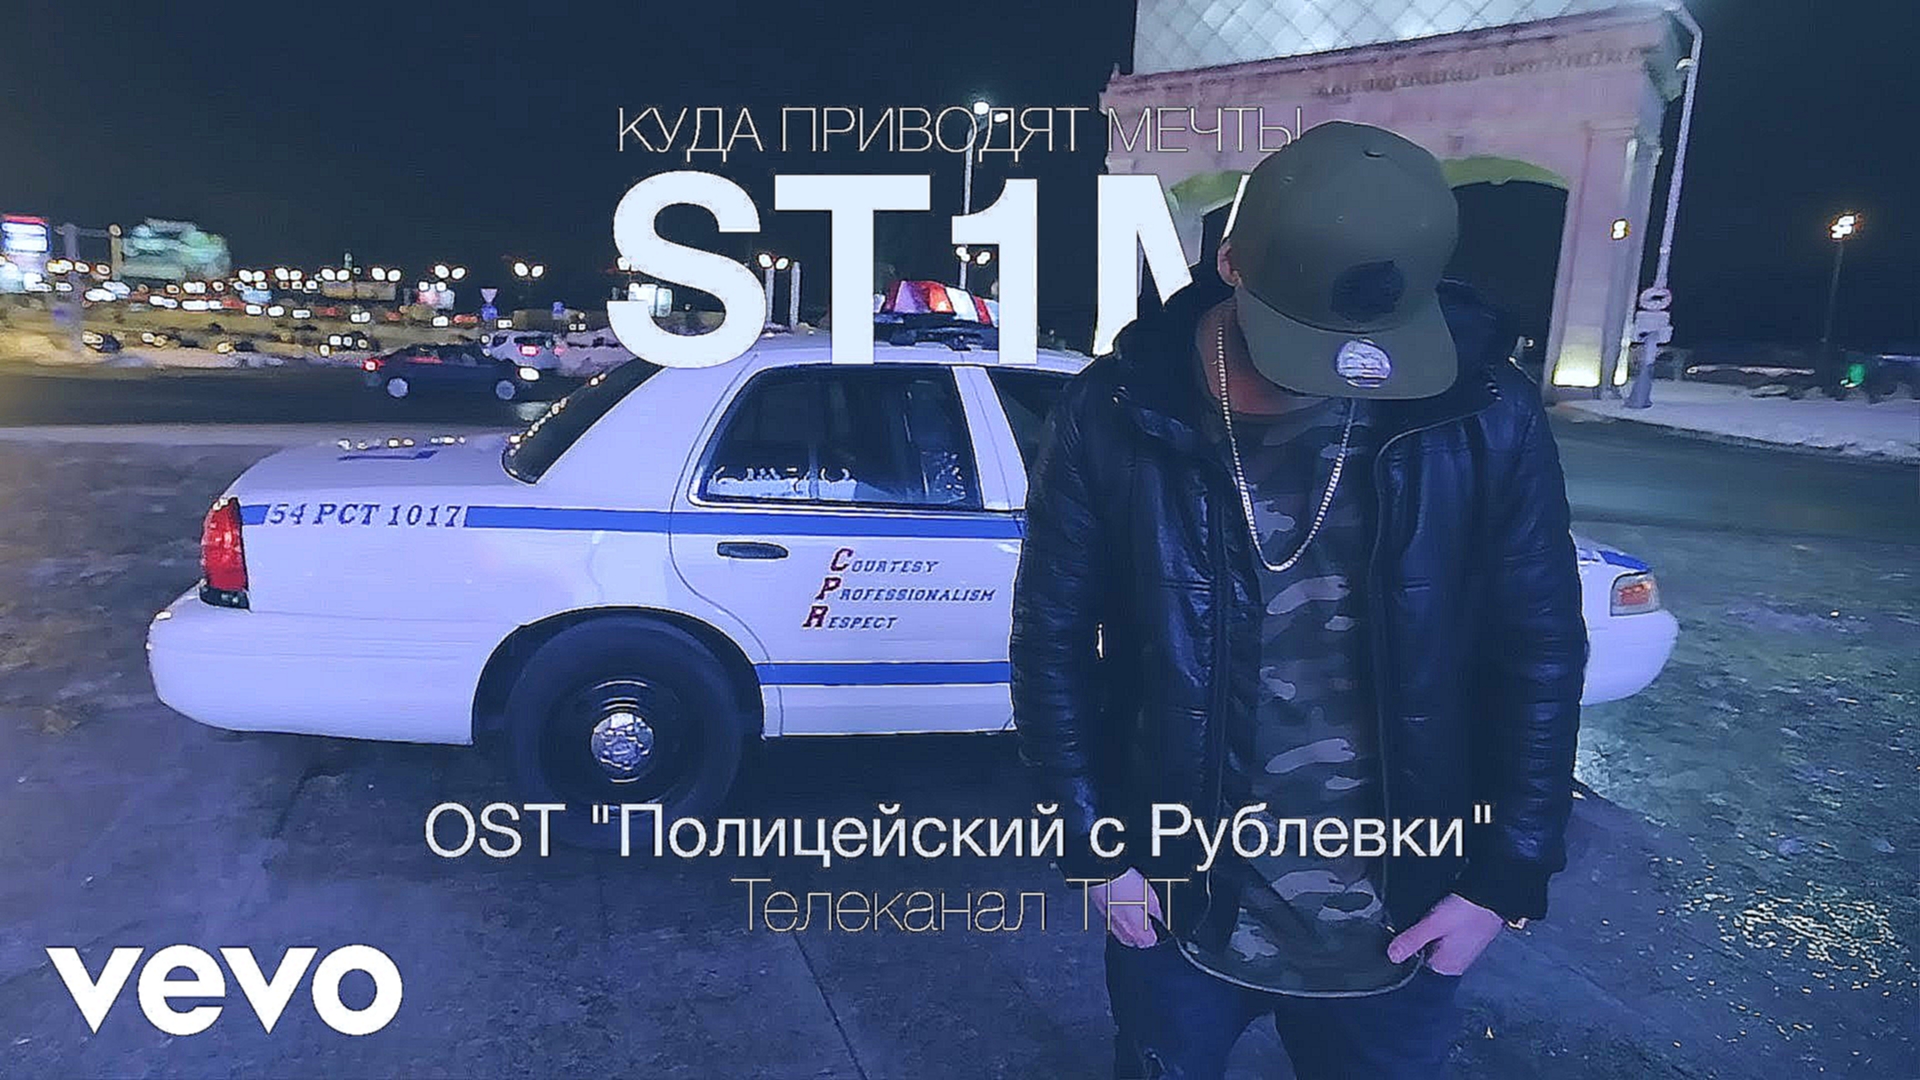 Музыкальный видеоклип ST1M - Куда приводят мечты (OST Полицейский с Рублевки) 